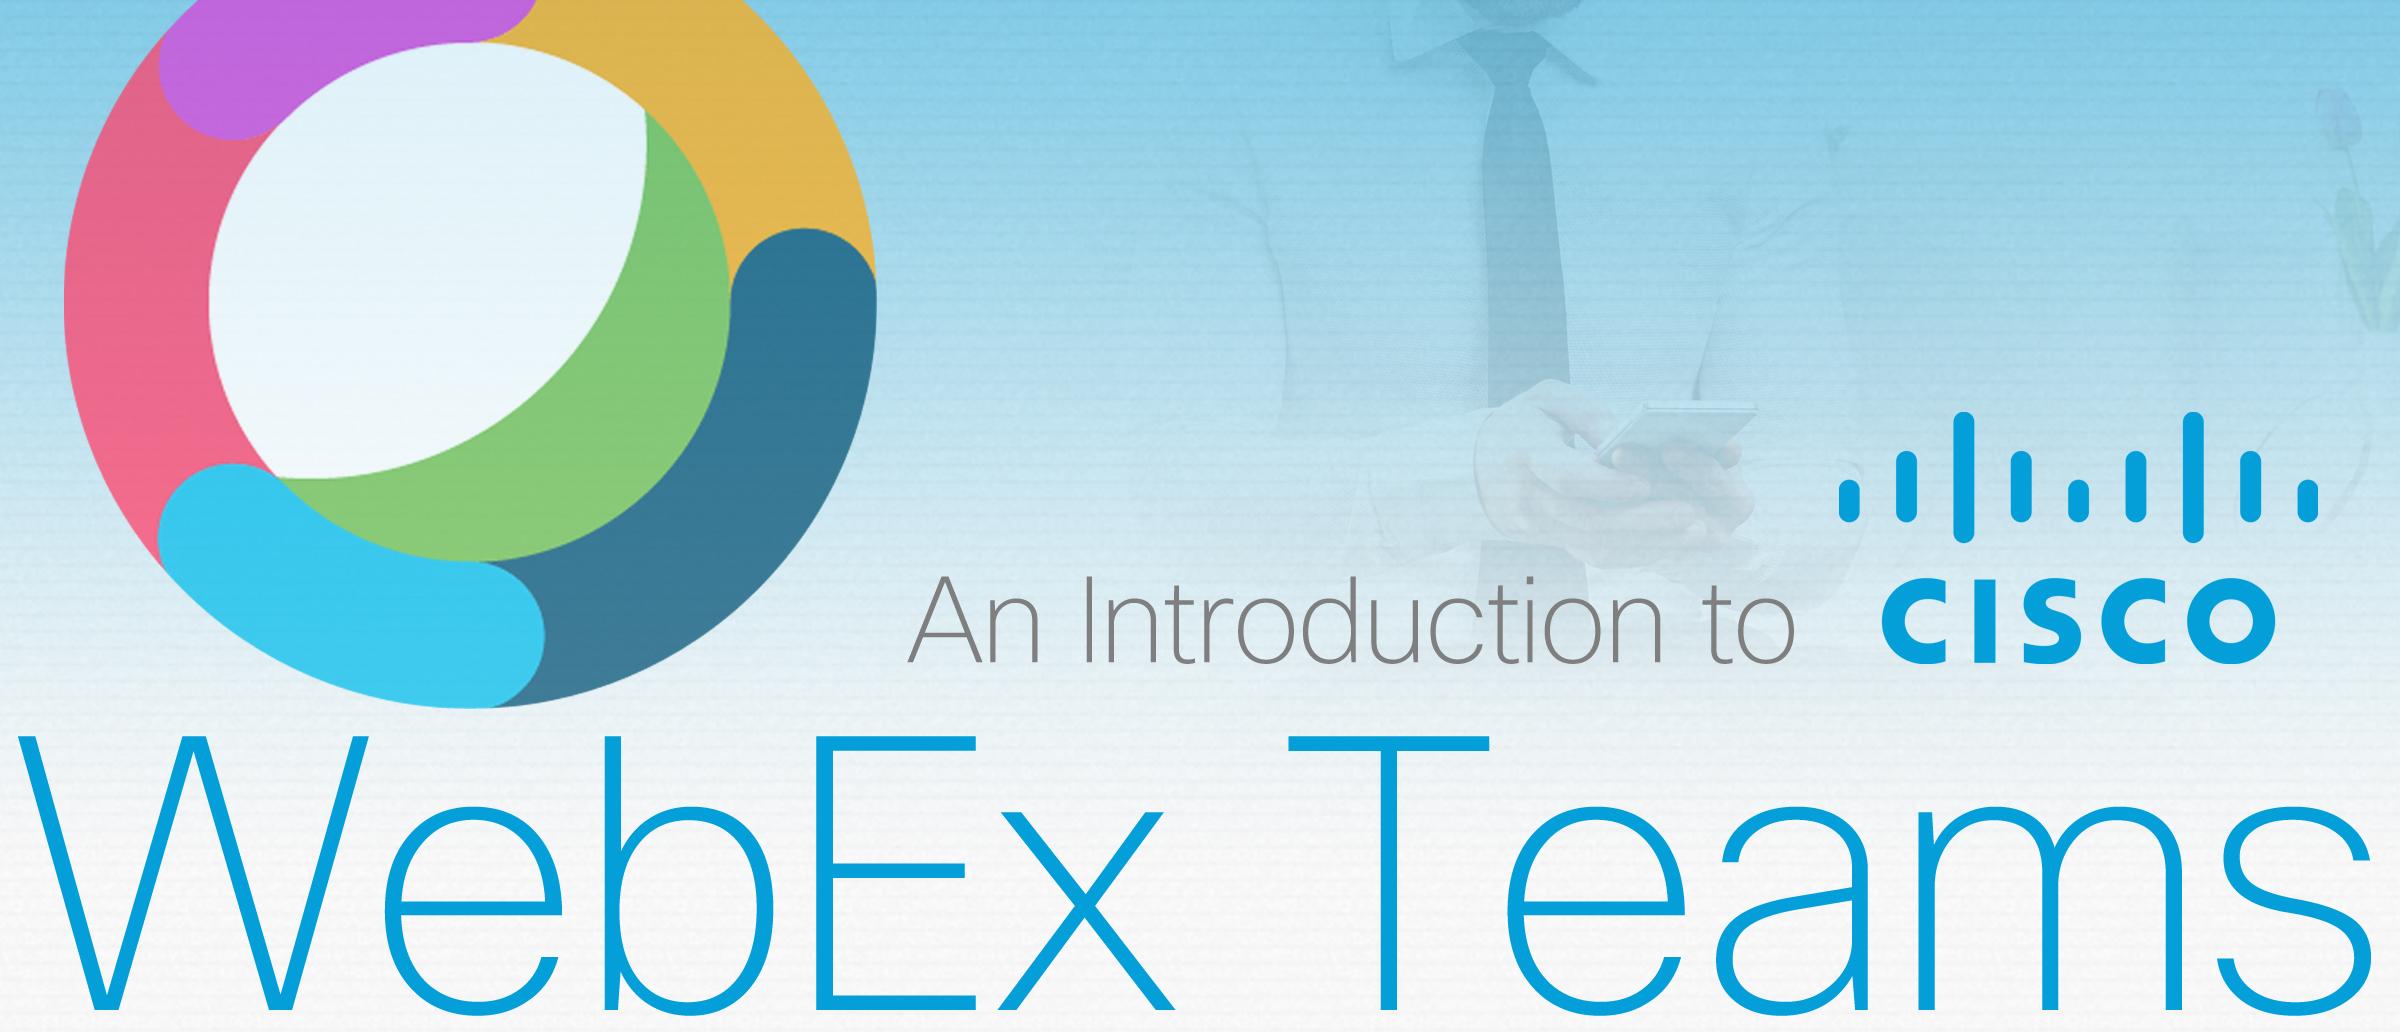 Cisco WebEx Logo - Webex Teams - An Introduction to Webex Teams - Tesrex